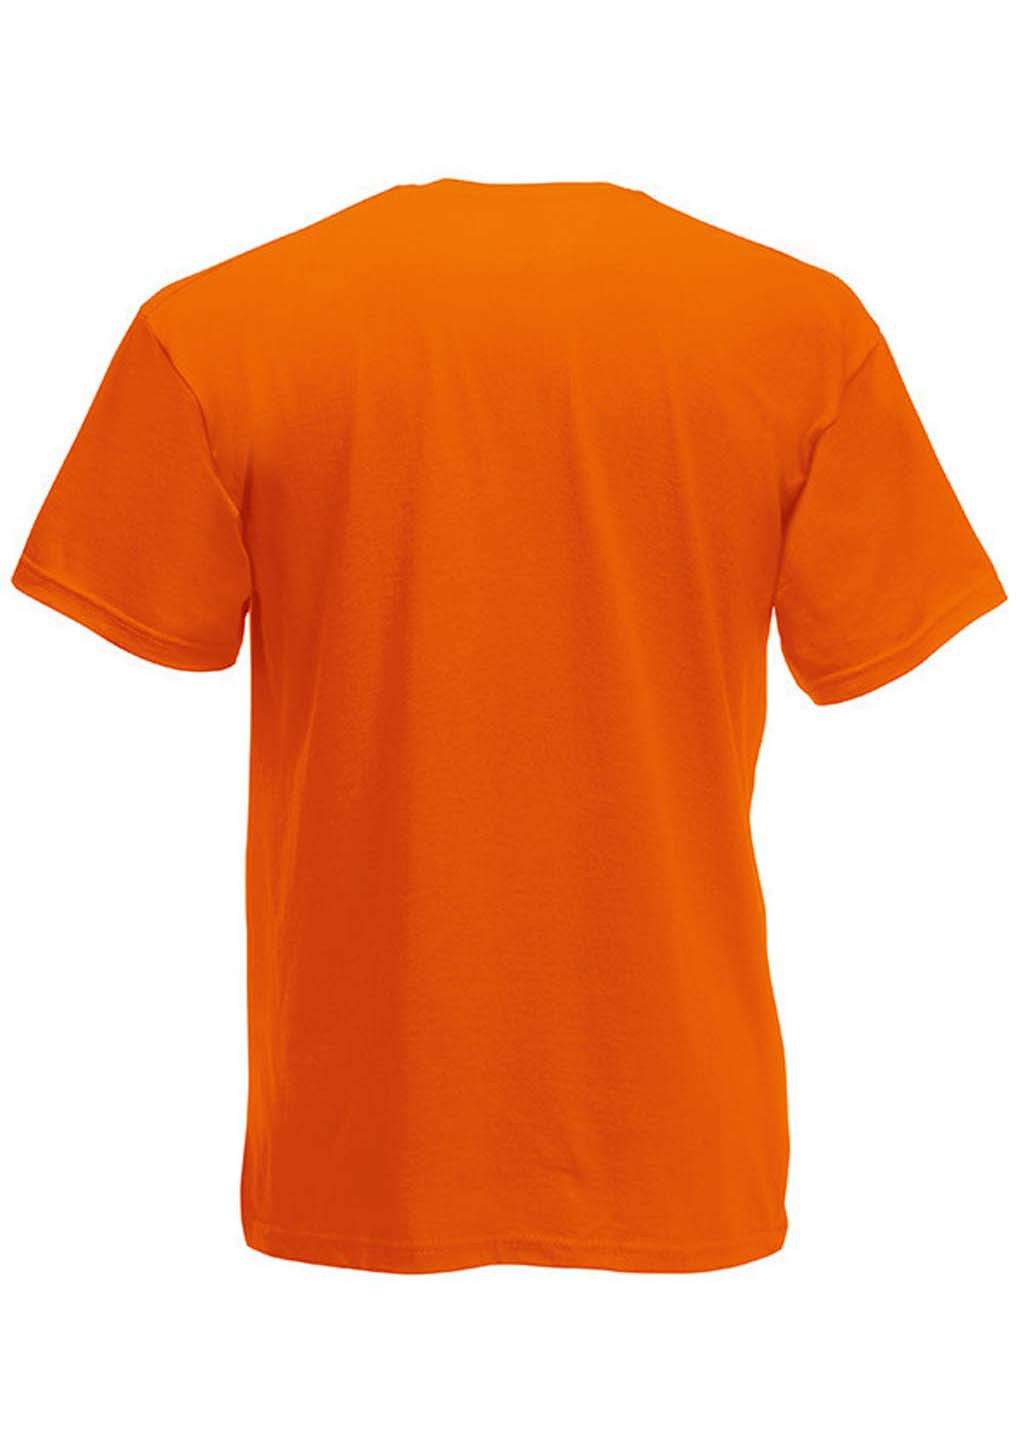 Оранжевая футболка Fruit of the Loom Ringspun premium